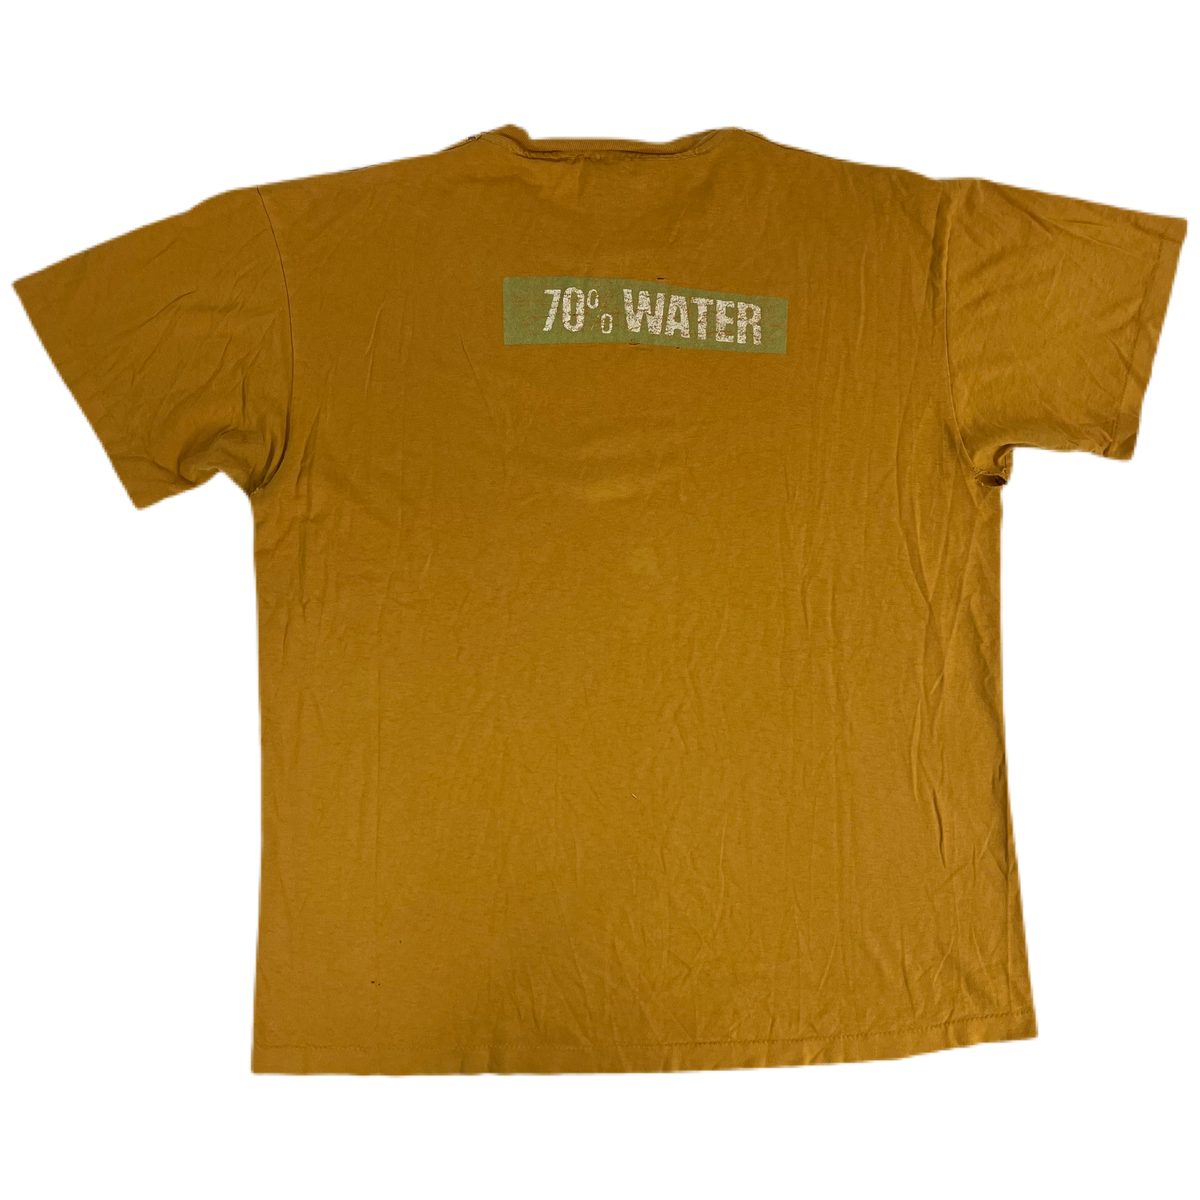 Vintage Pearl Jam &quot;Nervous&quot; 70% Water T-Shirt